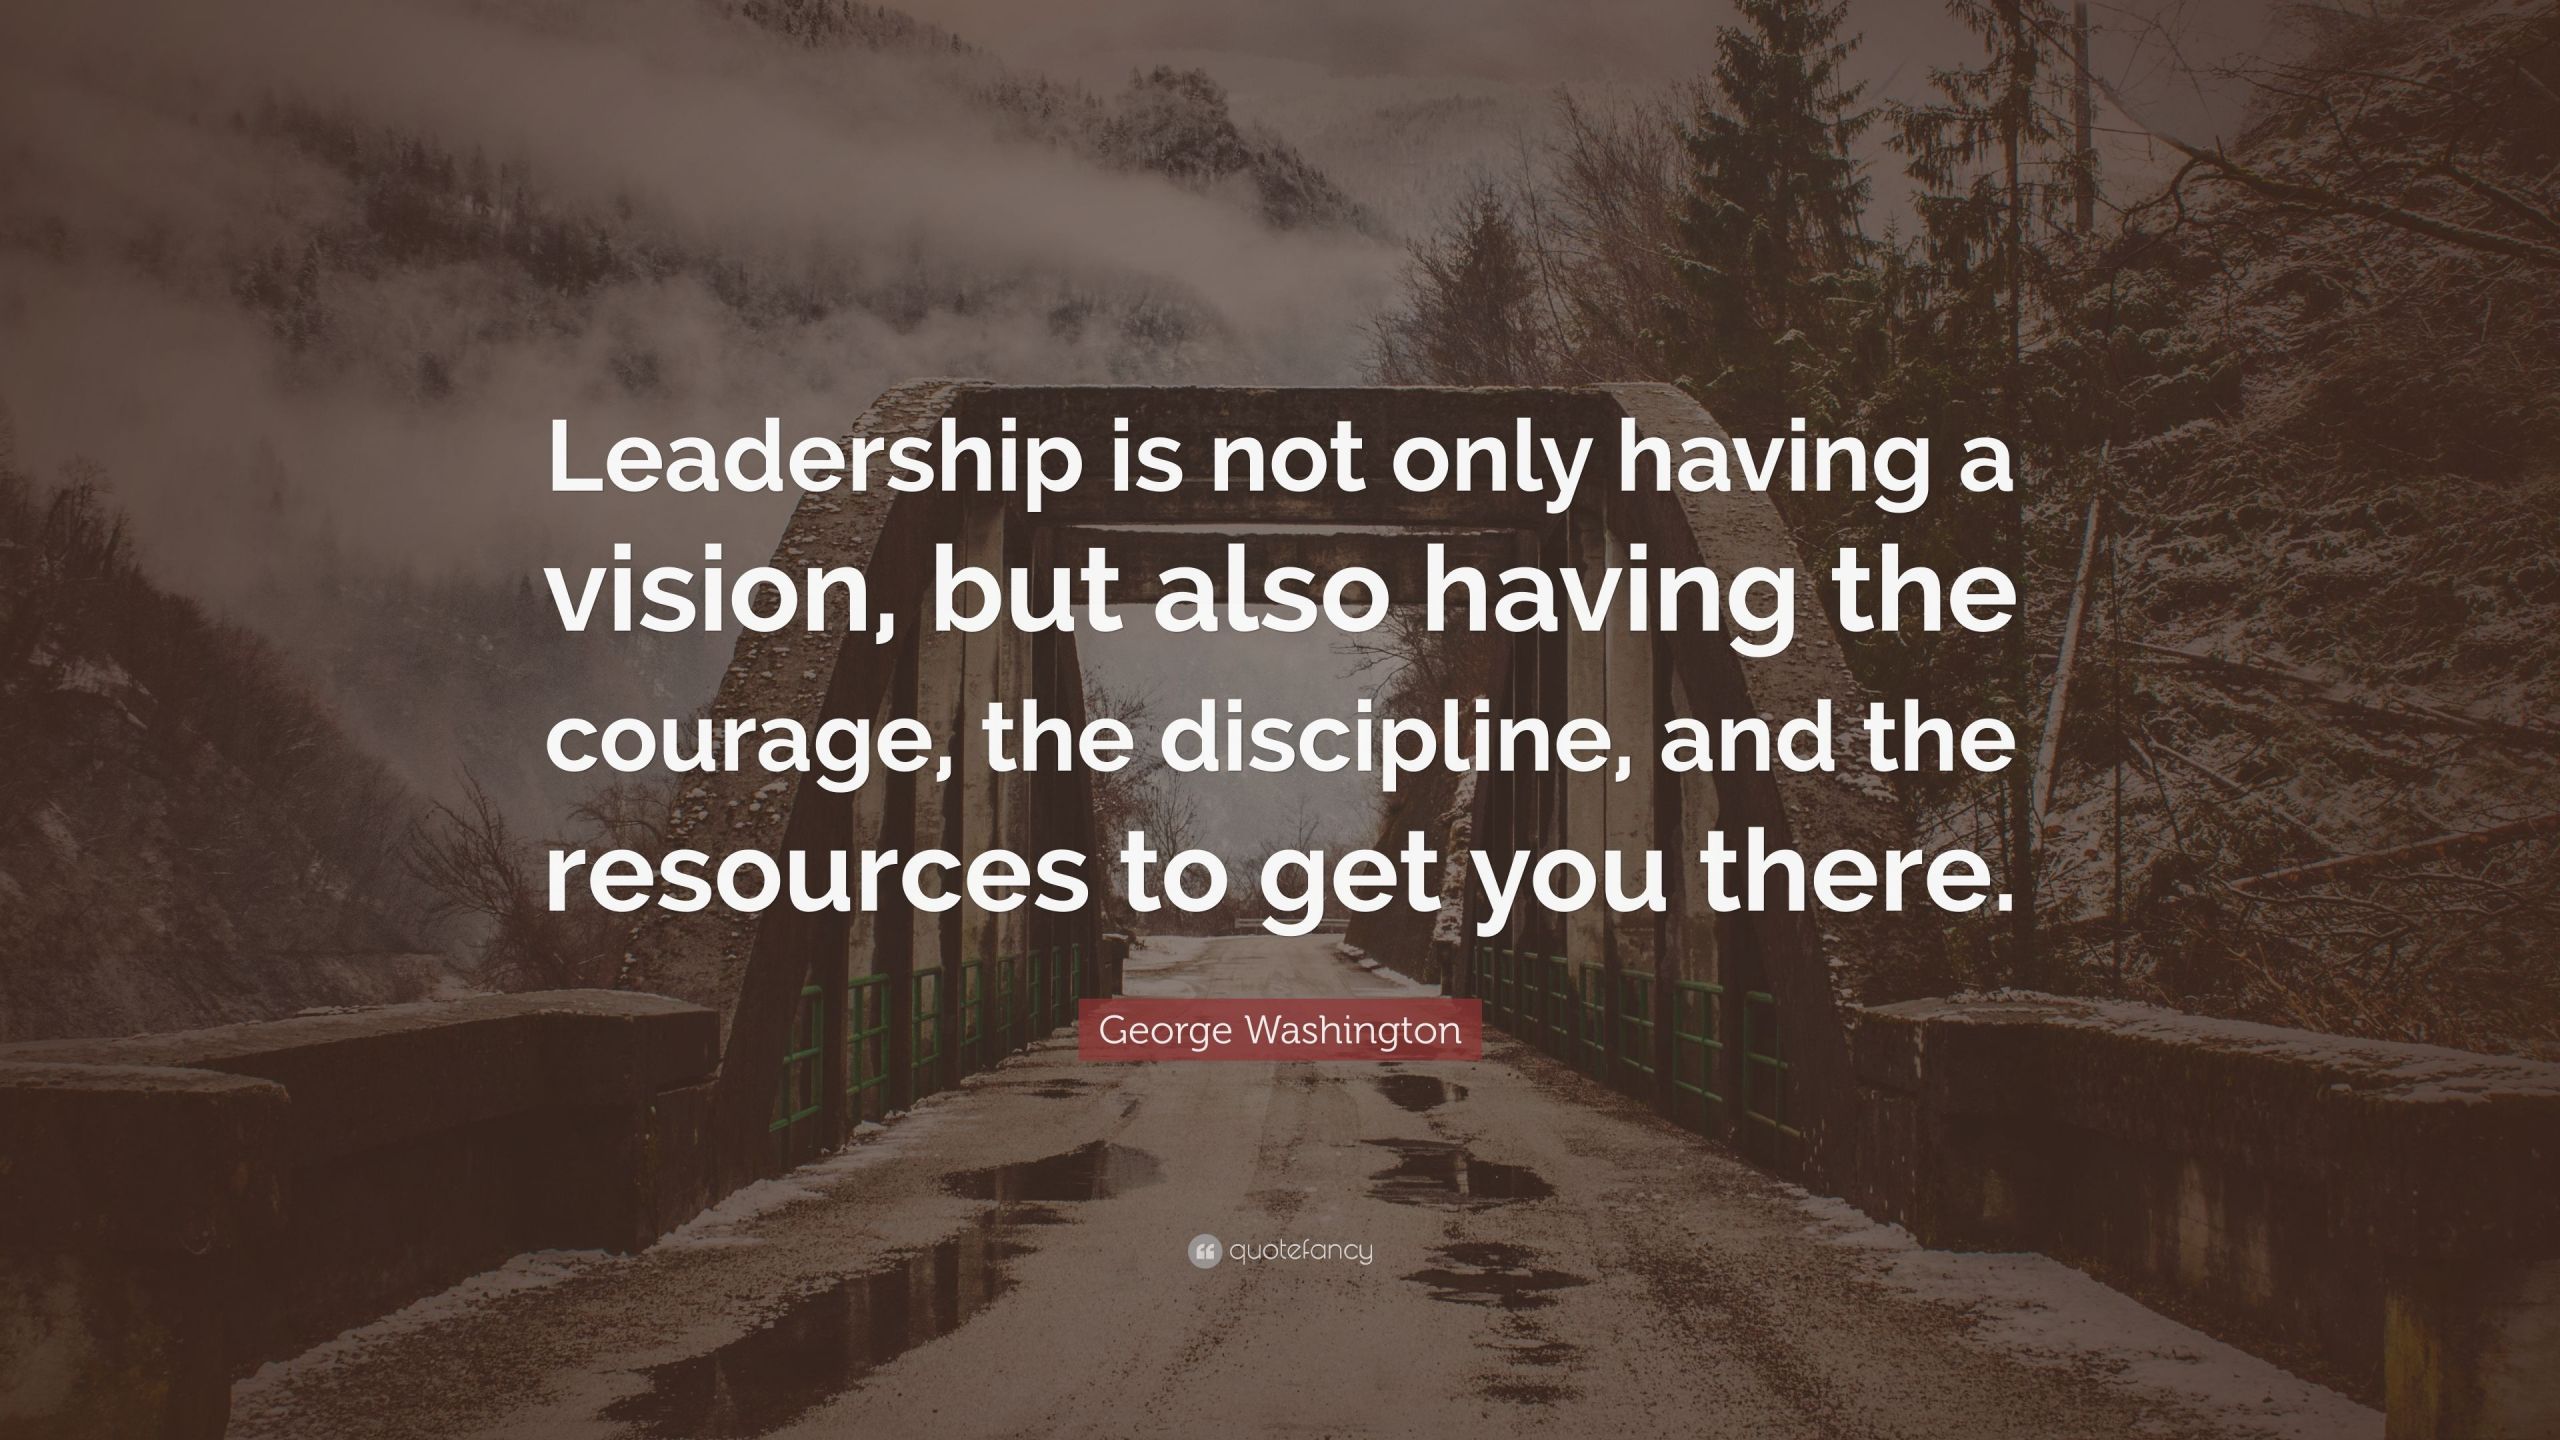 George Washington Quotes On Leadership
 George Washington Quote “Leadership is not only having a